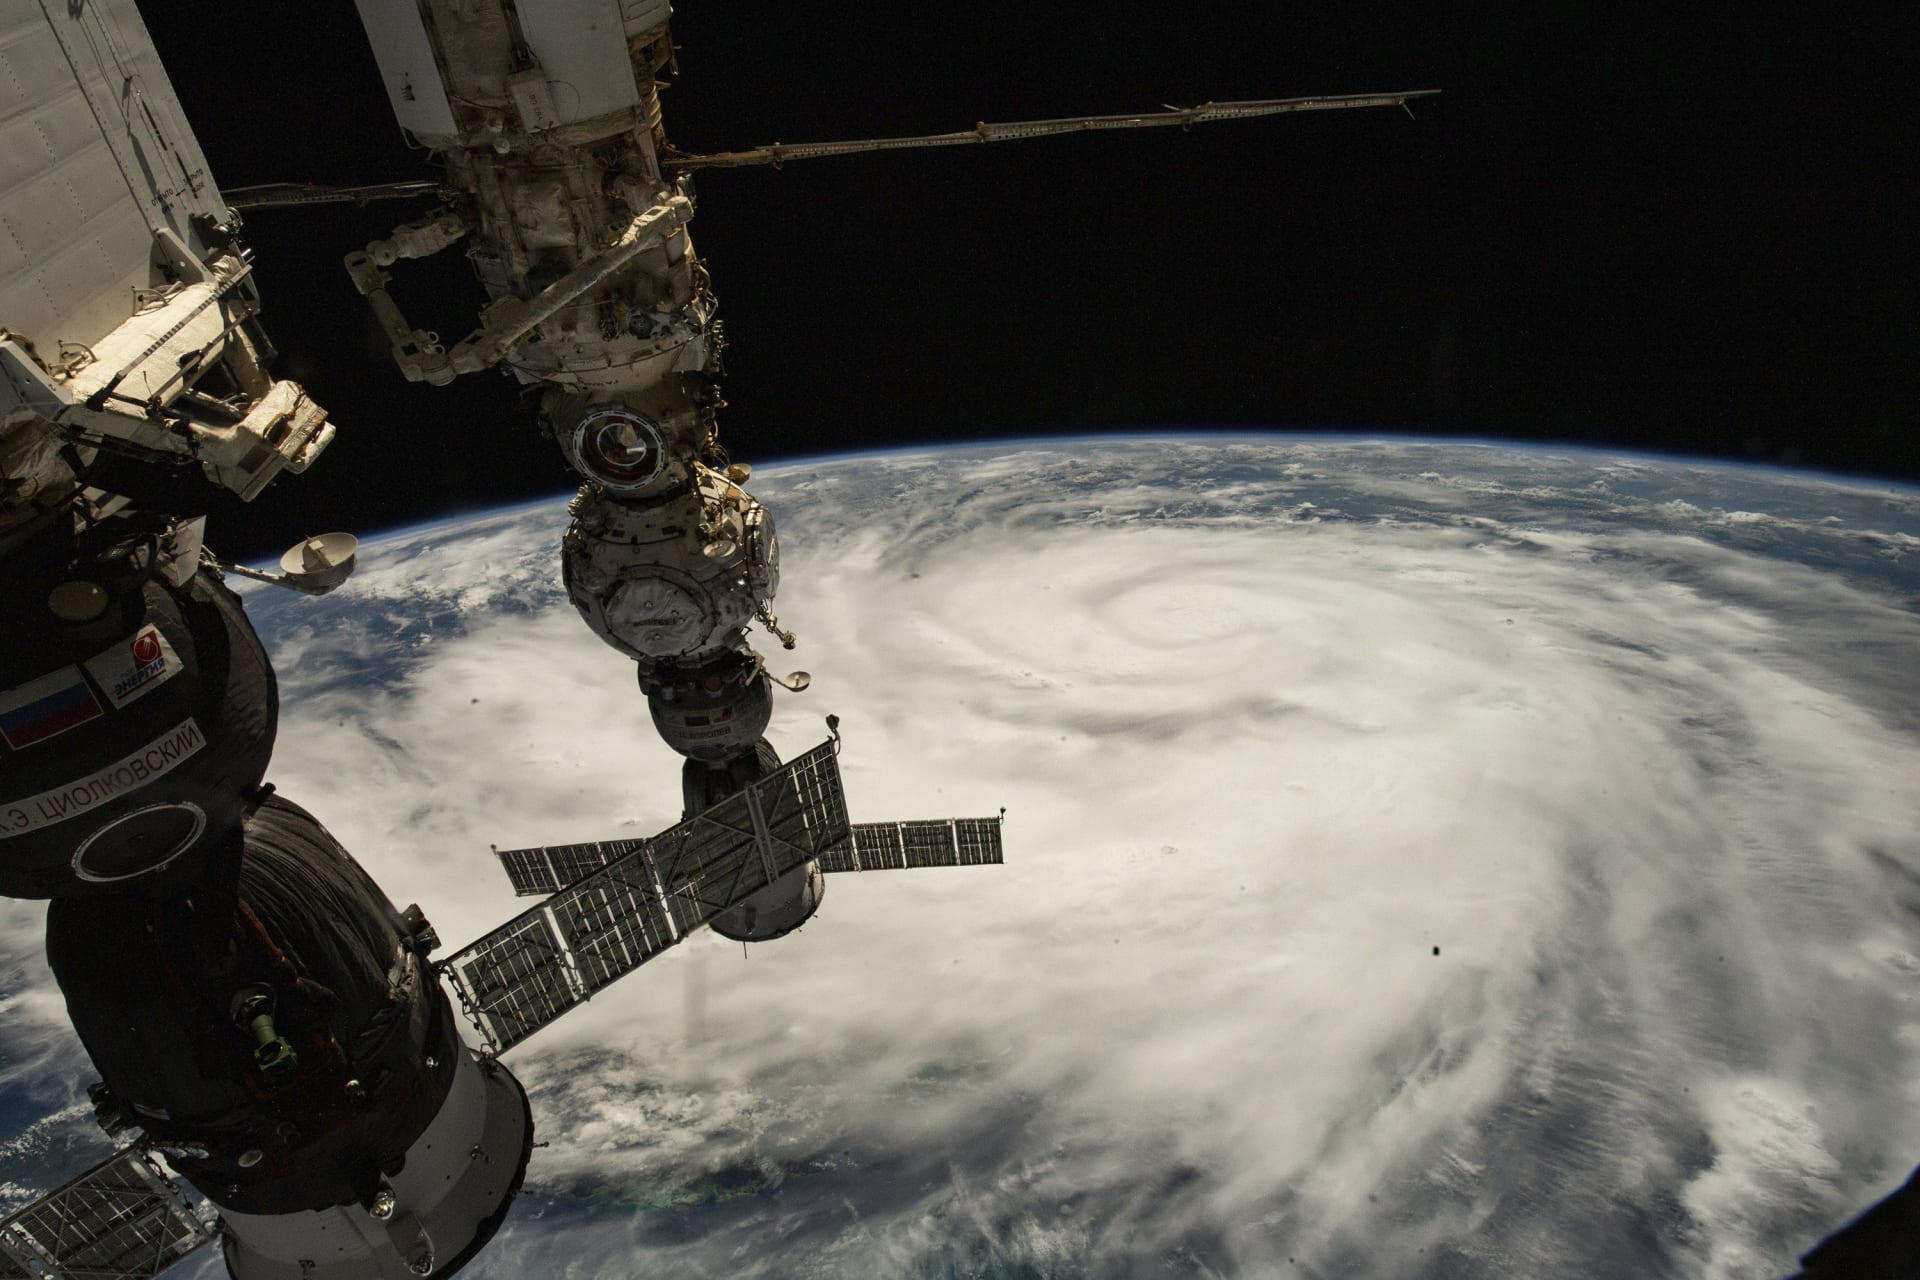 Hurikán Ian vyfocený z ISS (26. října 2022)